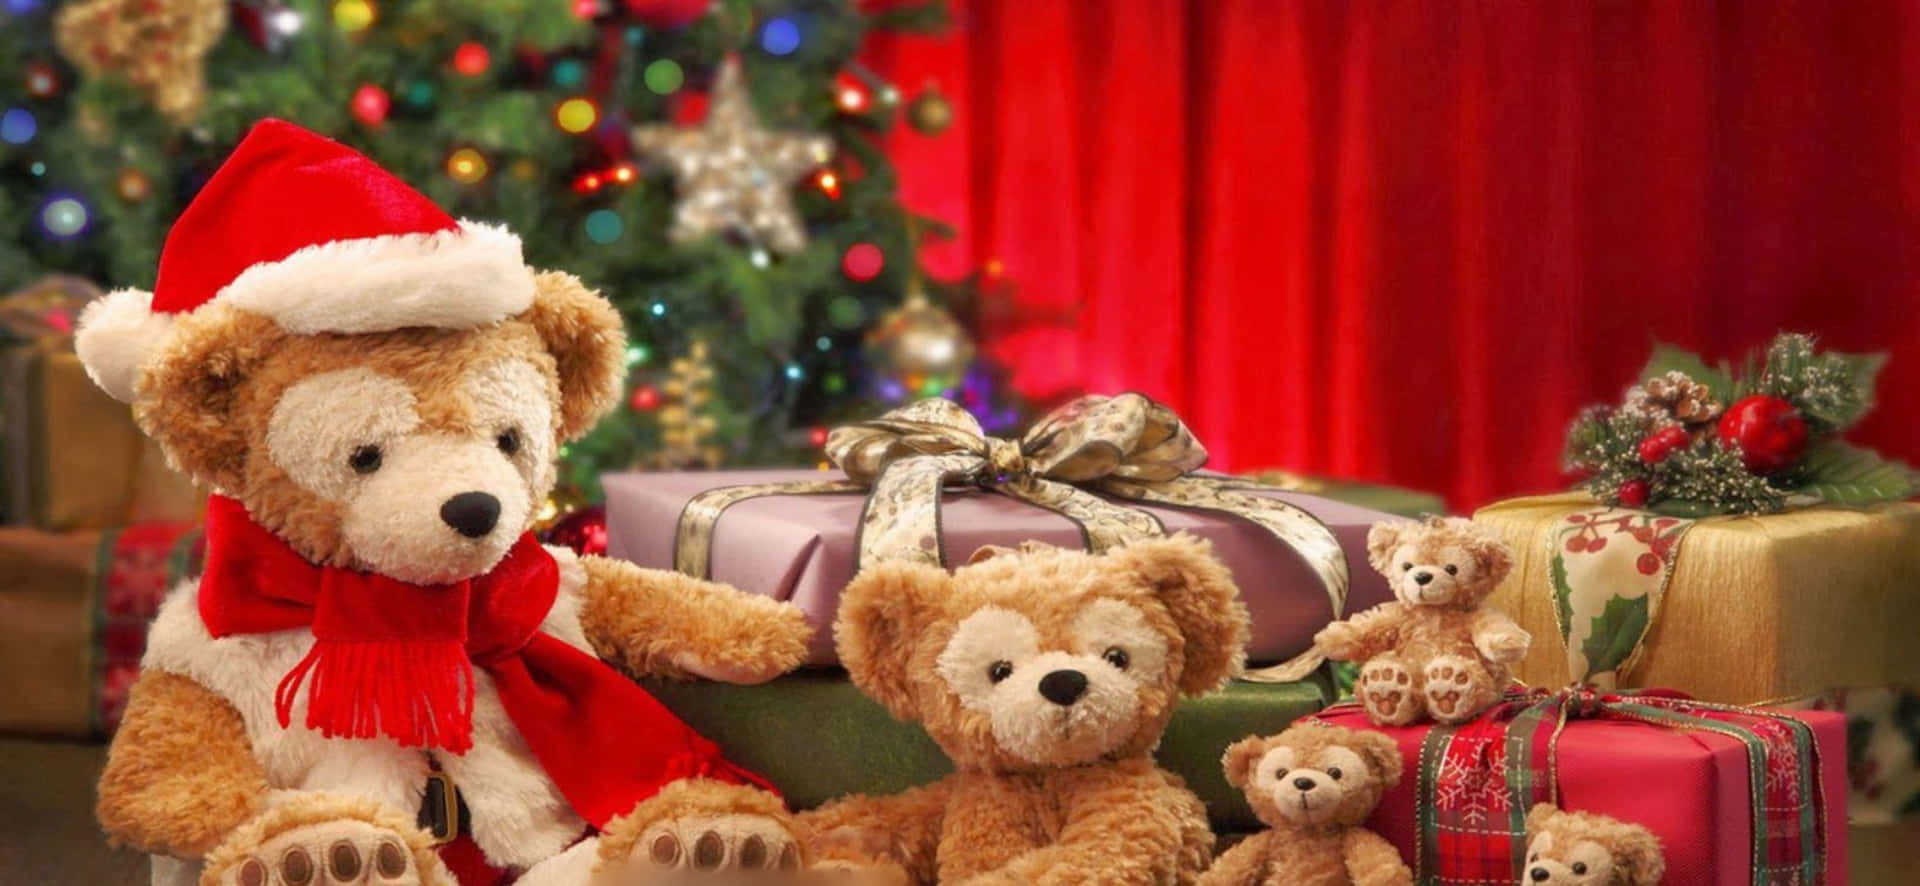 Billede af teddybjørne og julegaver